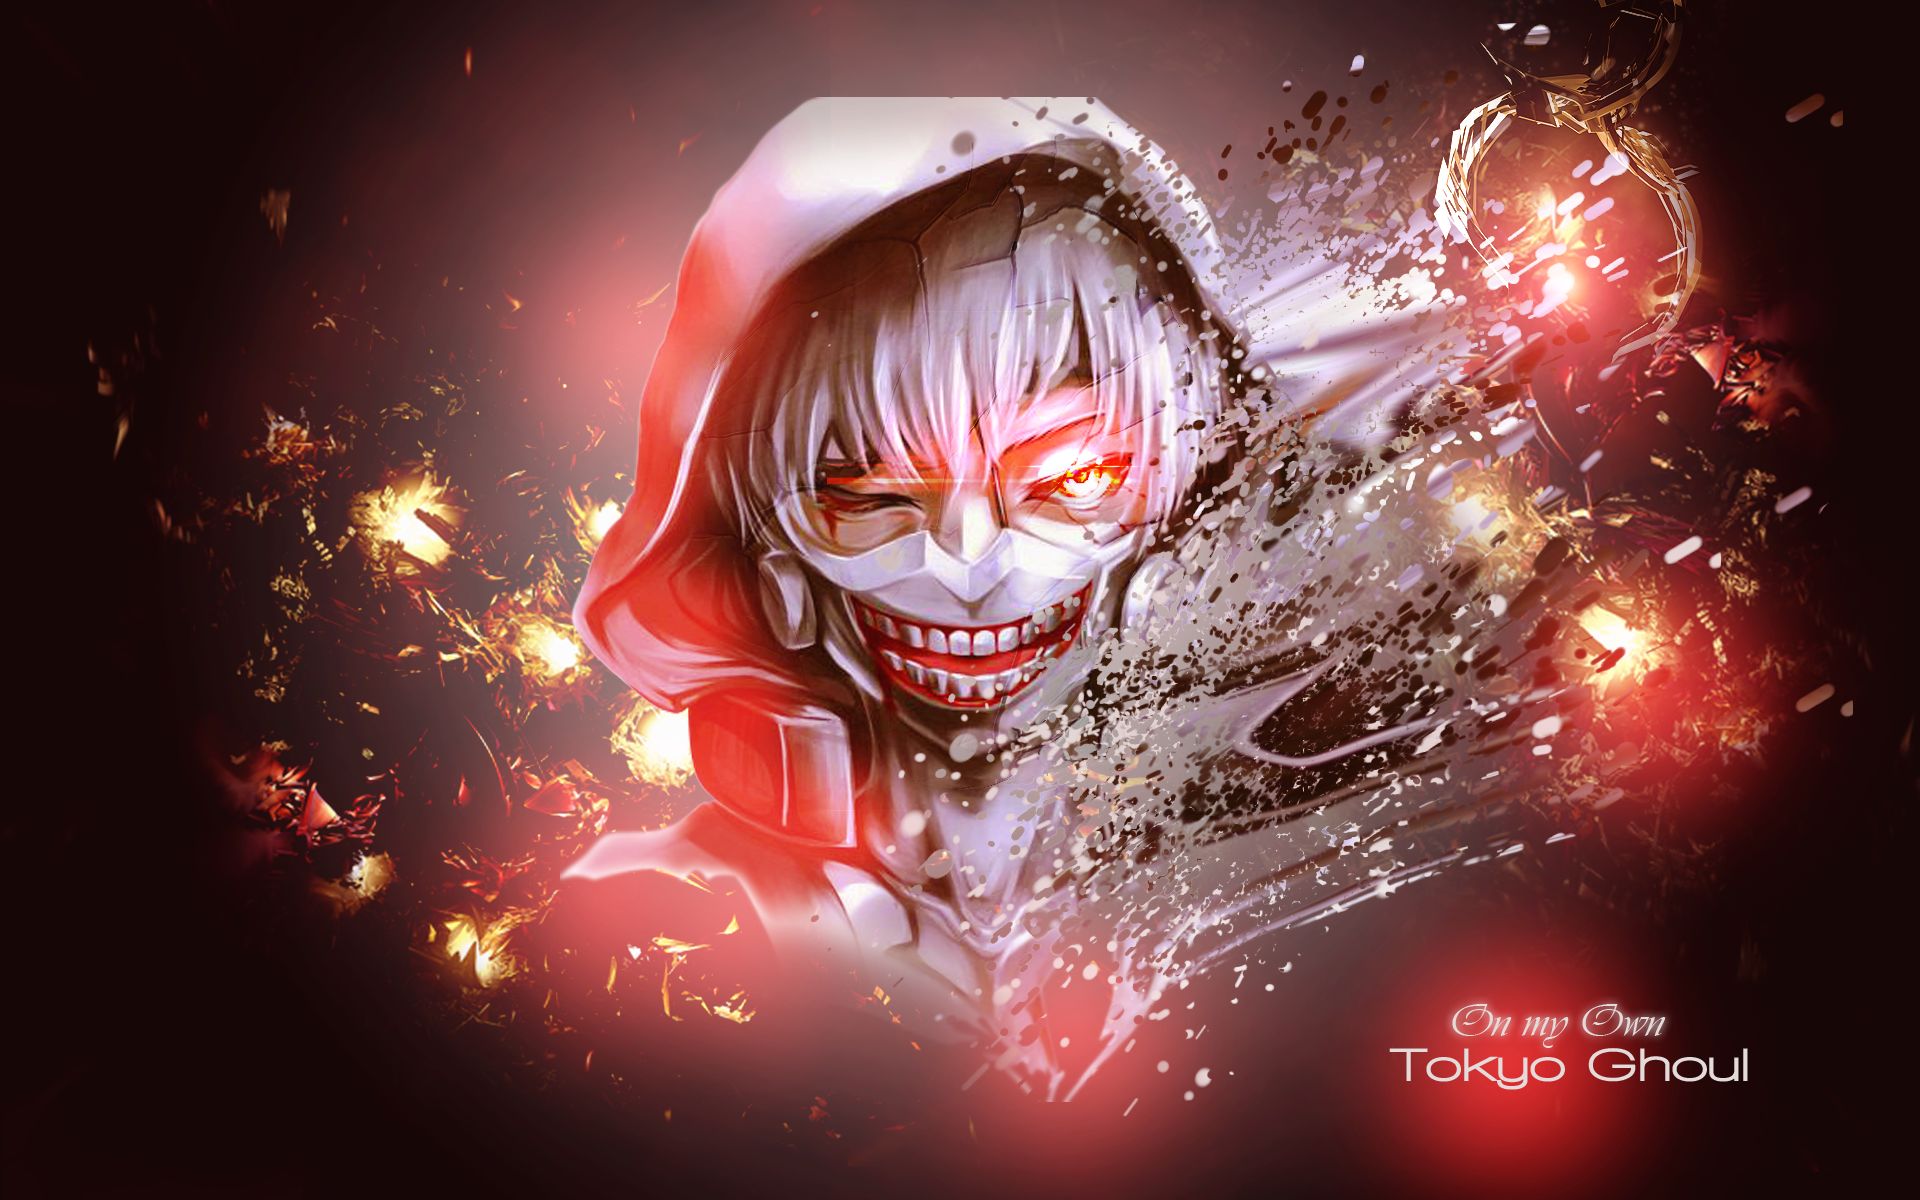 hood, anime, tokyo ghoul, ken kaneki, mask, red eyes, teeth Free Stock Photo